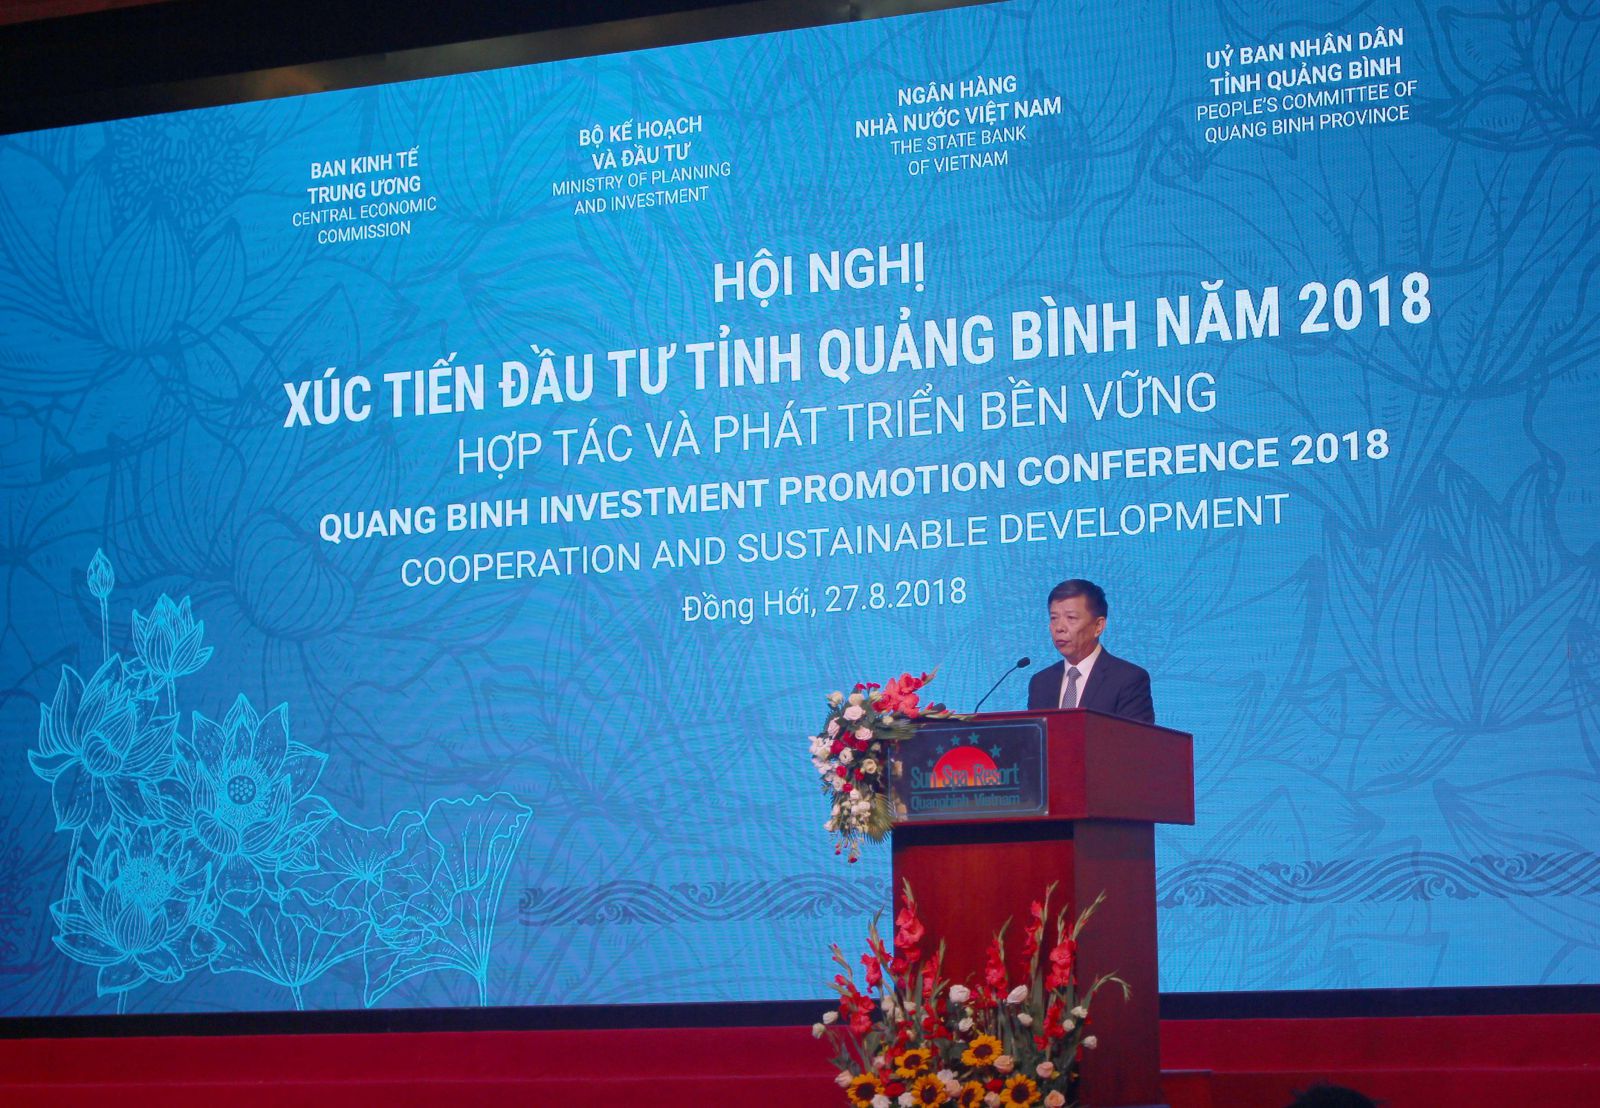 Ông Nguyễn Hữu Hoài - Chủ tịch UBND tỉnh Quảng Bình phát biểu tại hội nghị